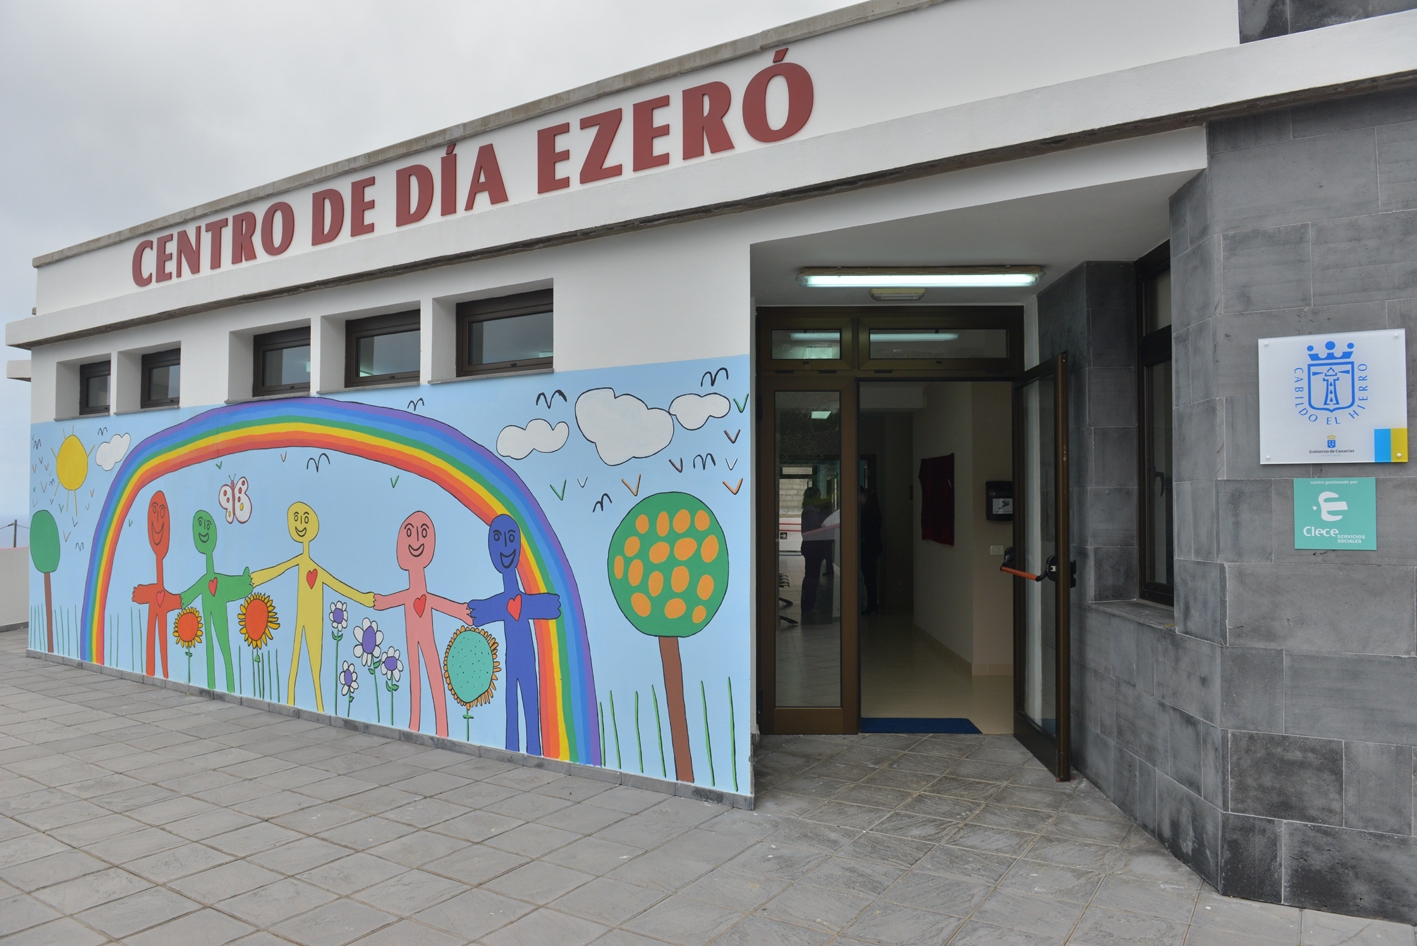 El Cabildo realiza mejoras en el Centro de Día Ezeró para Personas con Discapacidad Intelectual